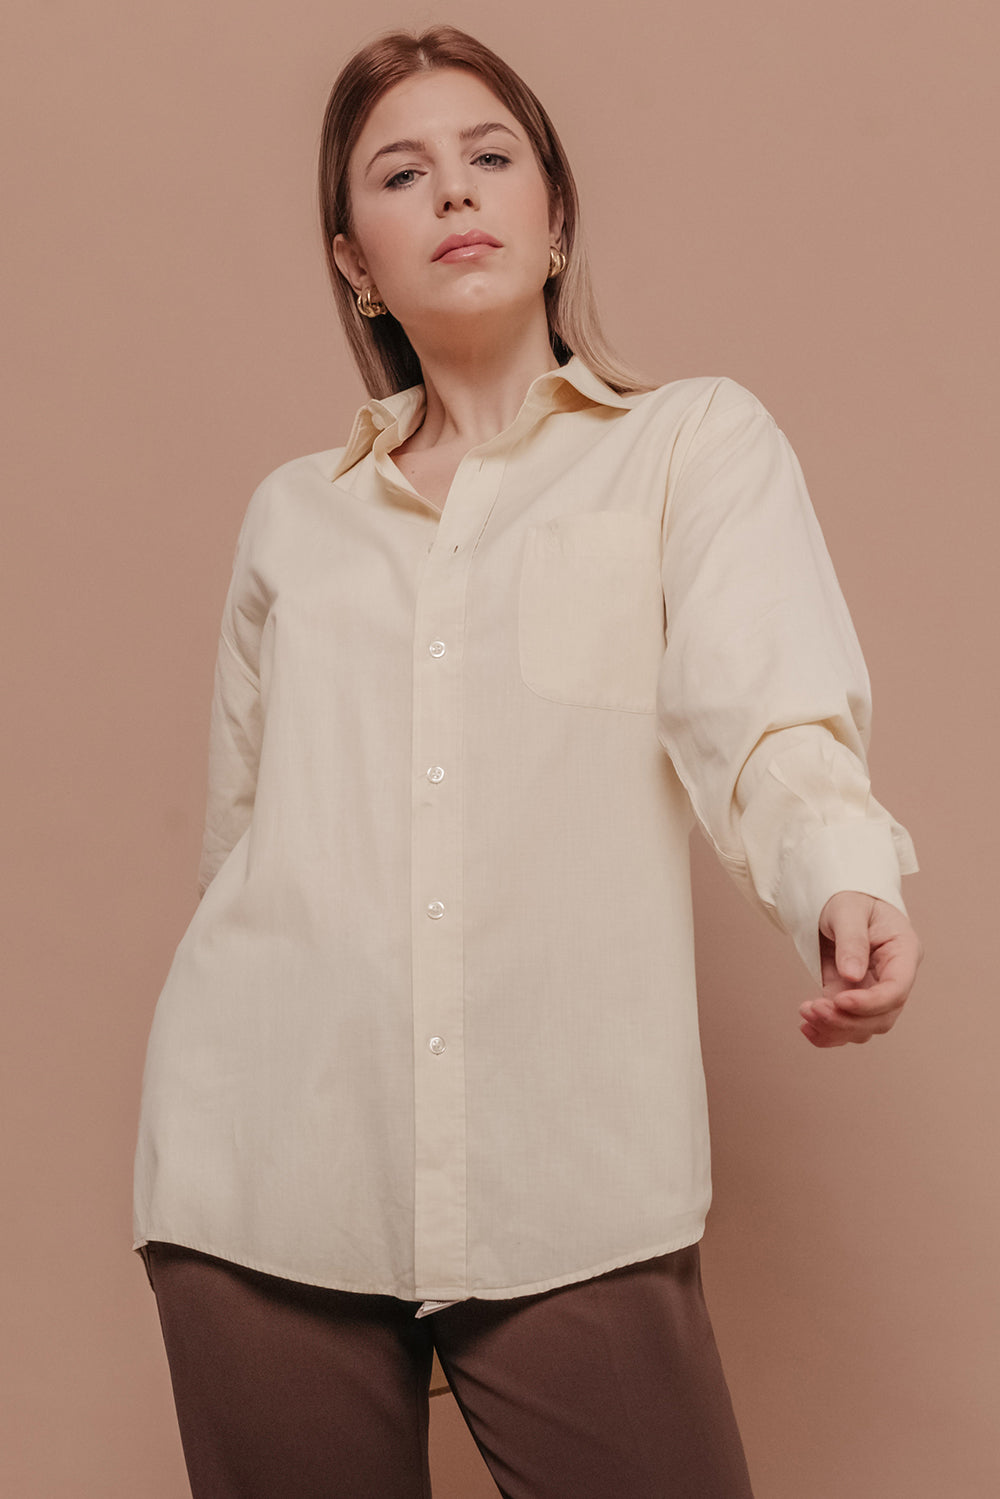 Yves Saint Laurent 100% Cotton Oversized Shirt Size L